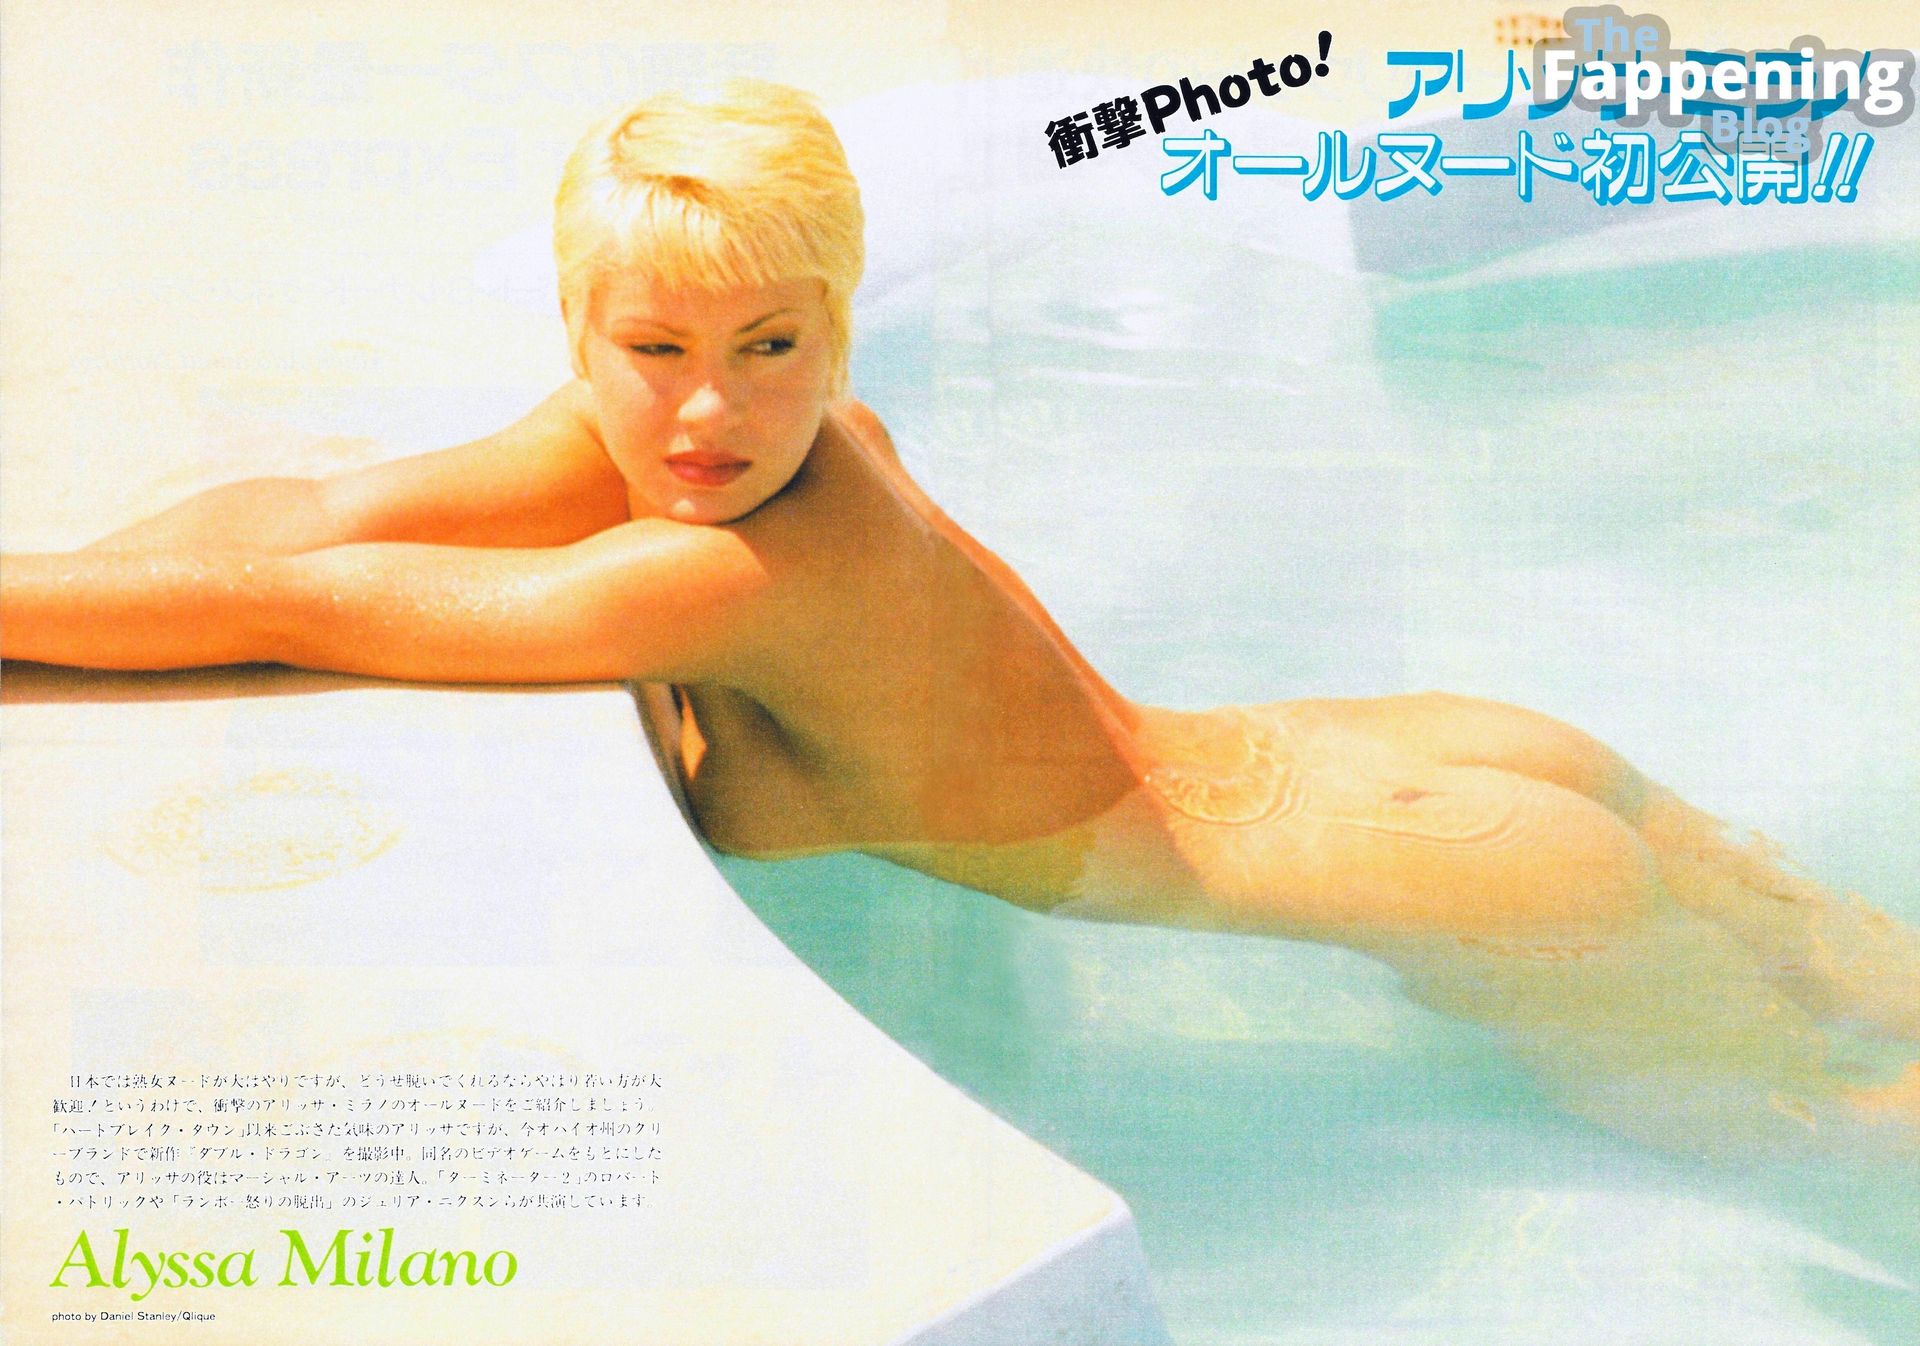 Alyssa-Milano-Nude-The-Fappening-Blog-5.jpg